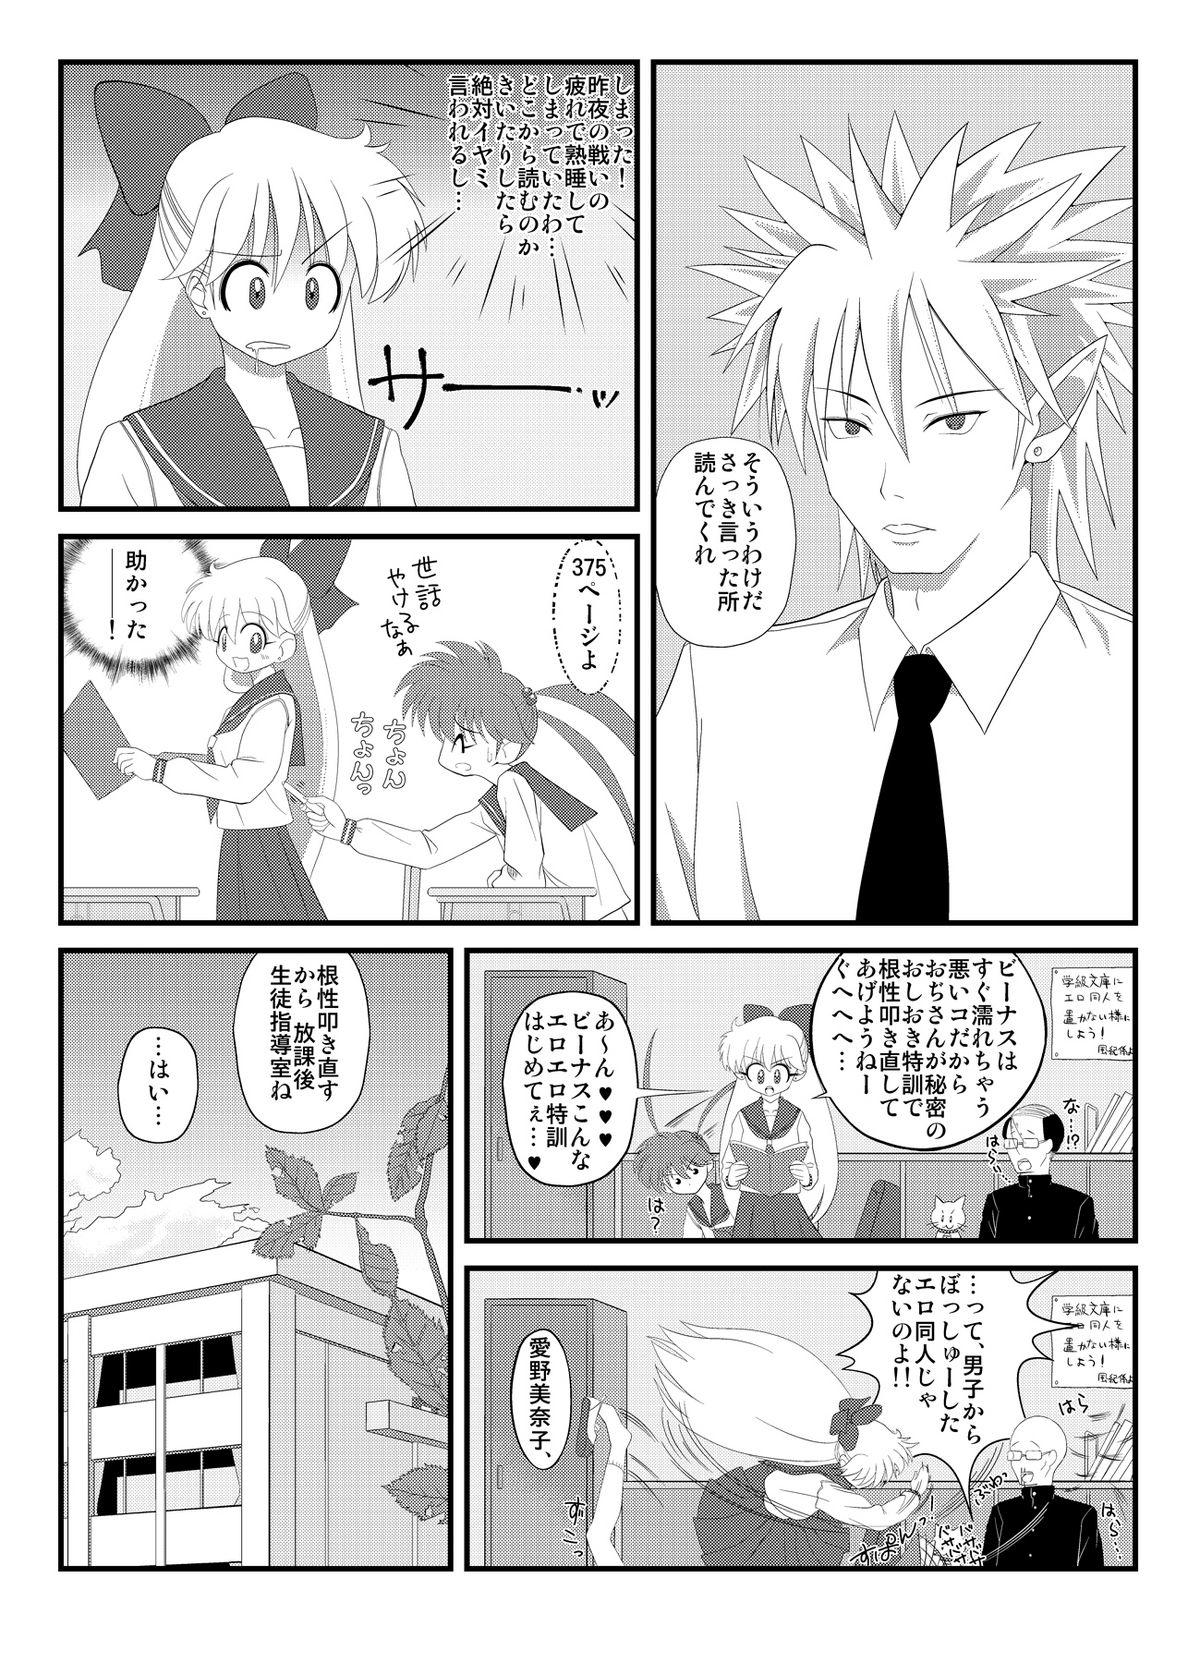  先生と美奈子の秘密特訓 - Sailor moon Passivo - Page 9